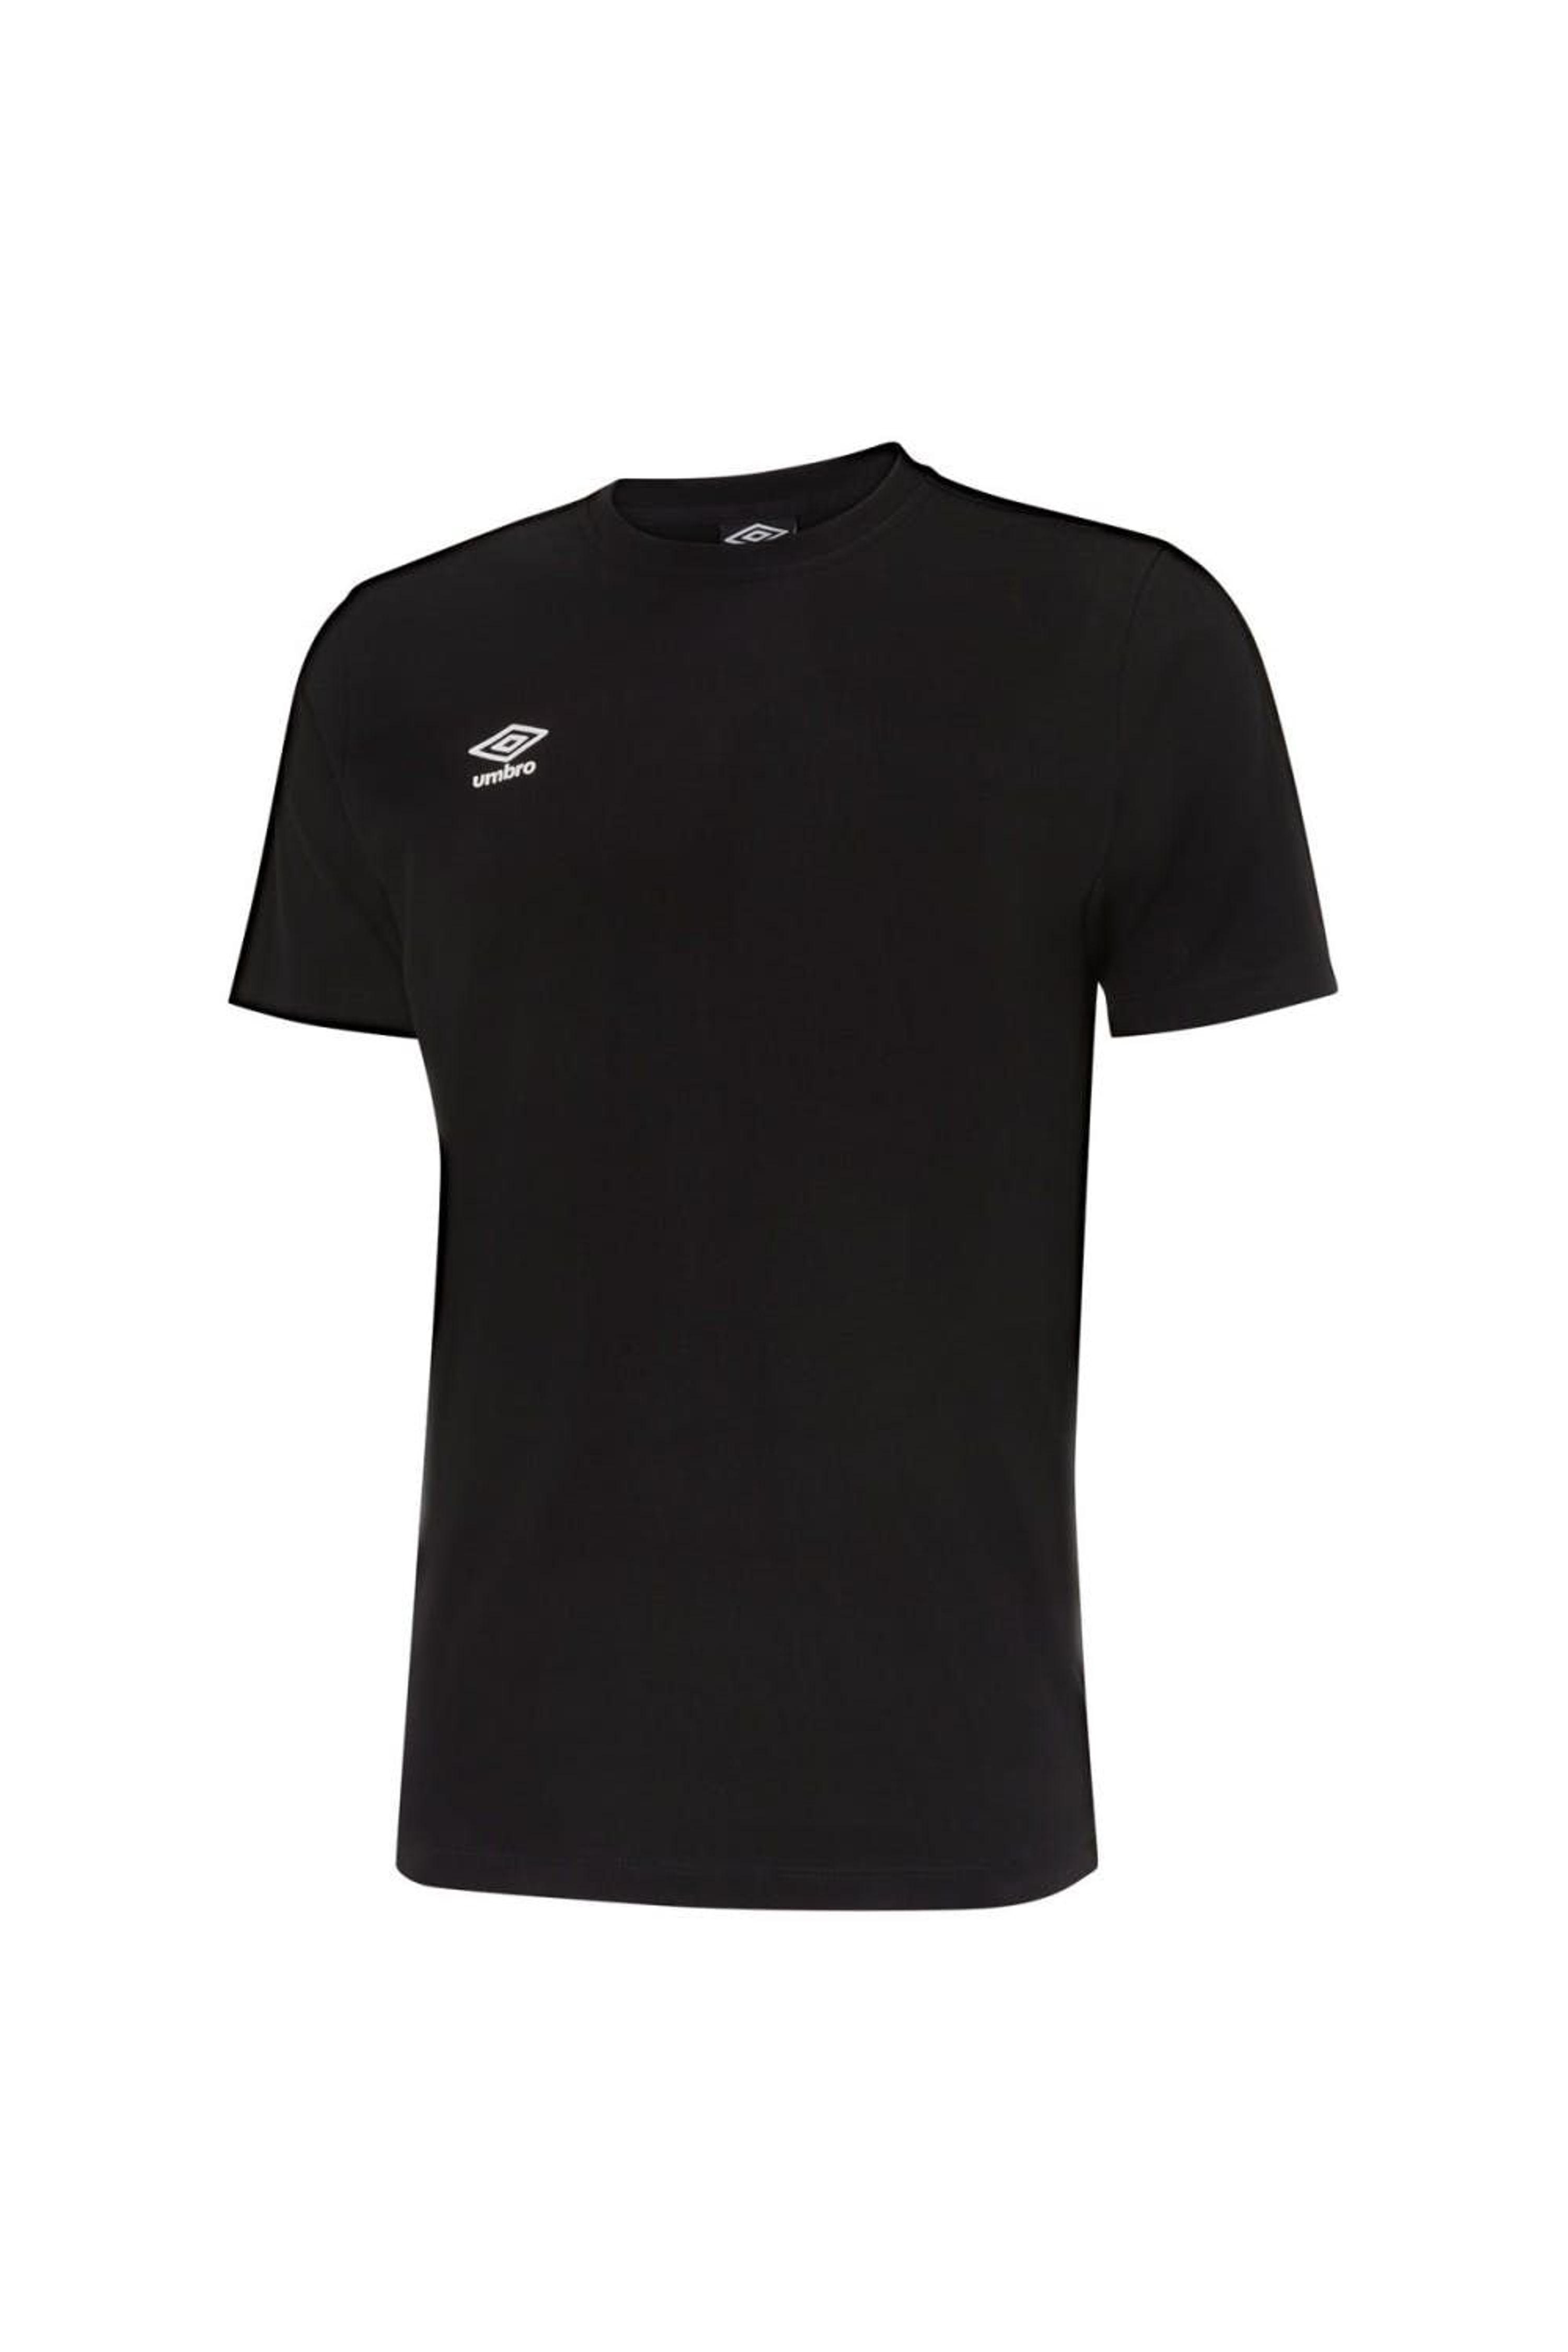 Umbro Pro Taped T-shirt in Black for Men | Lyst